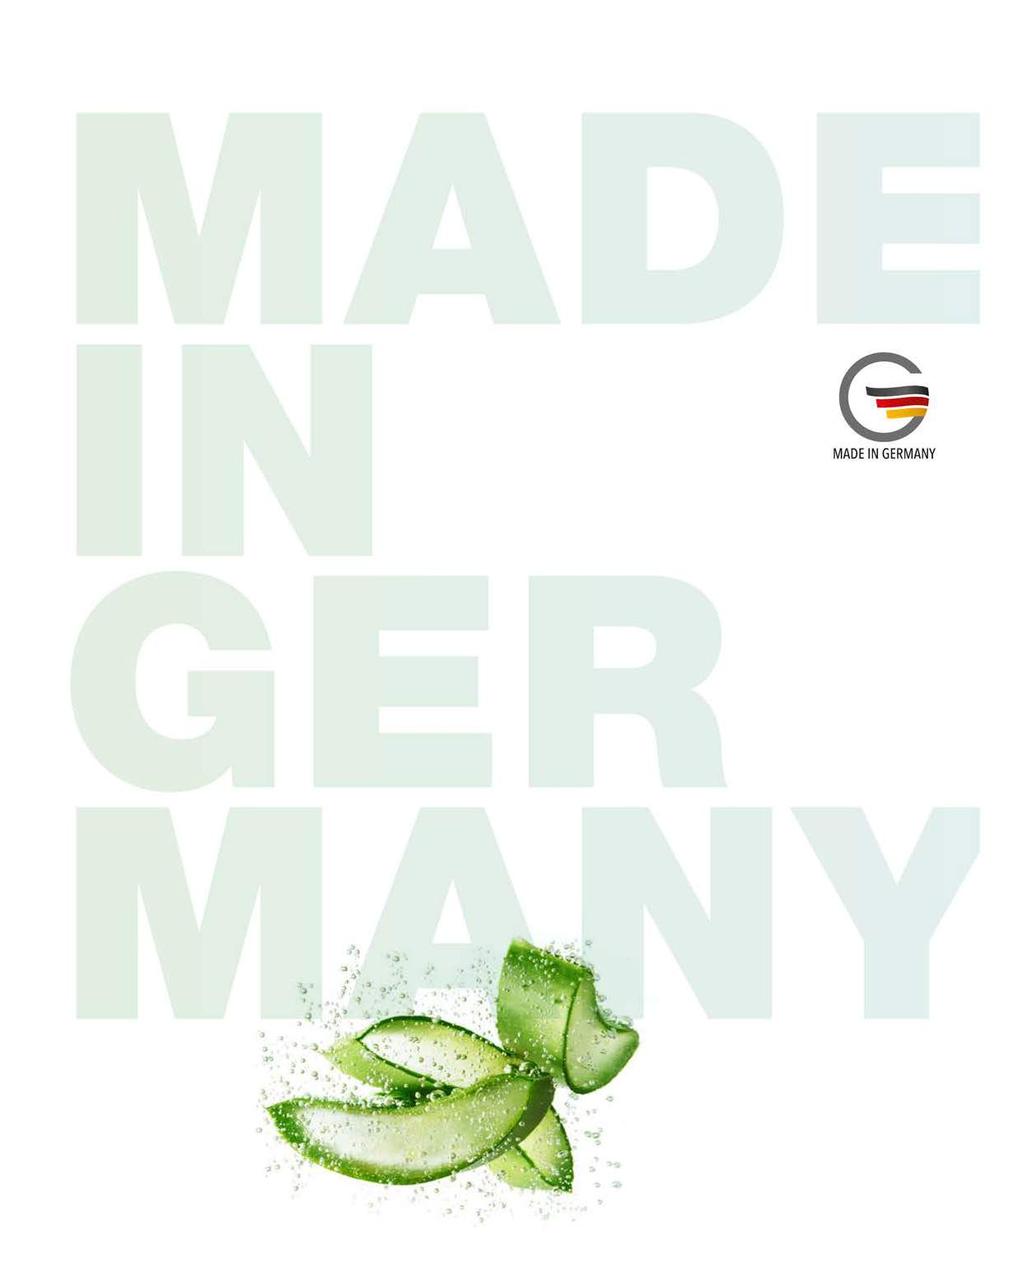 КАЧЕСТВО НА НАЙ-ВИСОКО НИВО Made in Germany навсякъде по света е символ за най-високо качество. Стремежът ни е да доказваме тези стандарти за качество при всички наши продукти всеки ден.